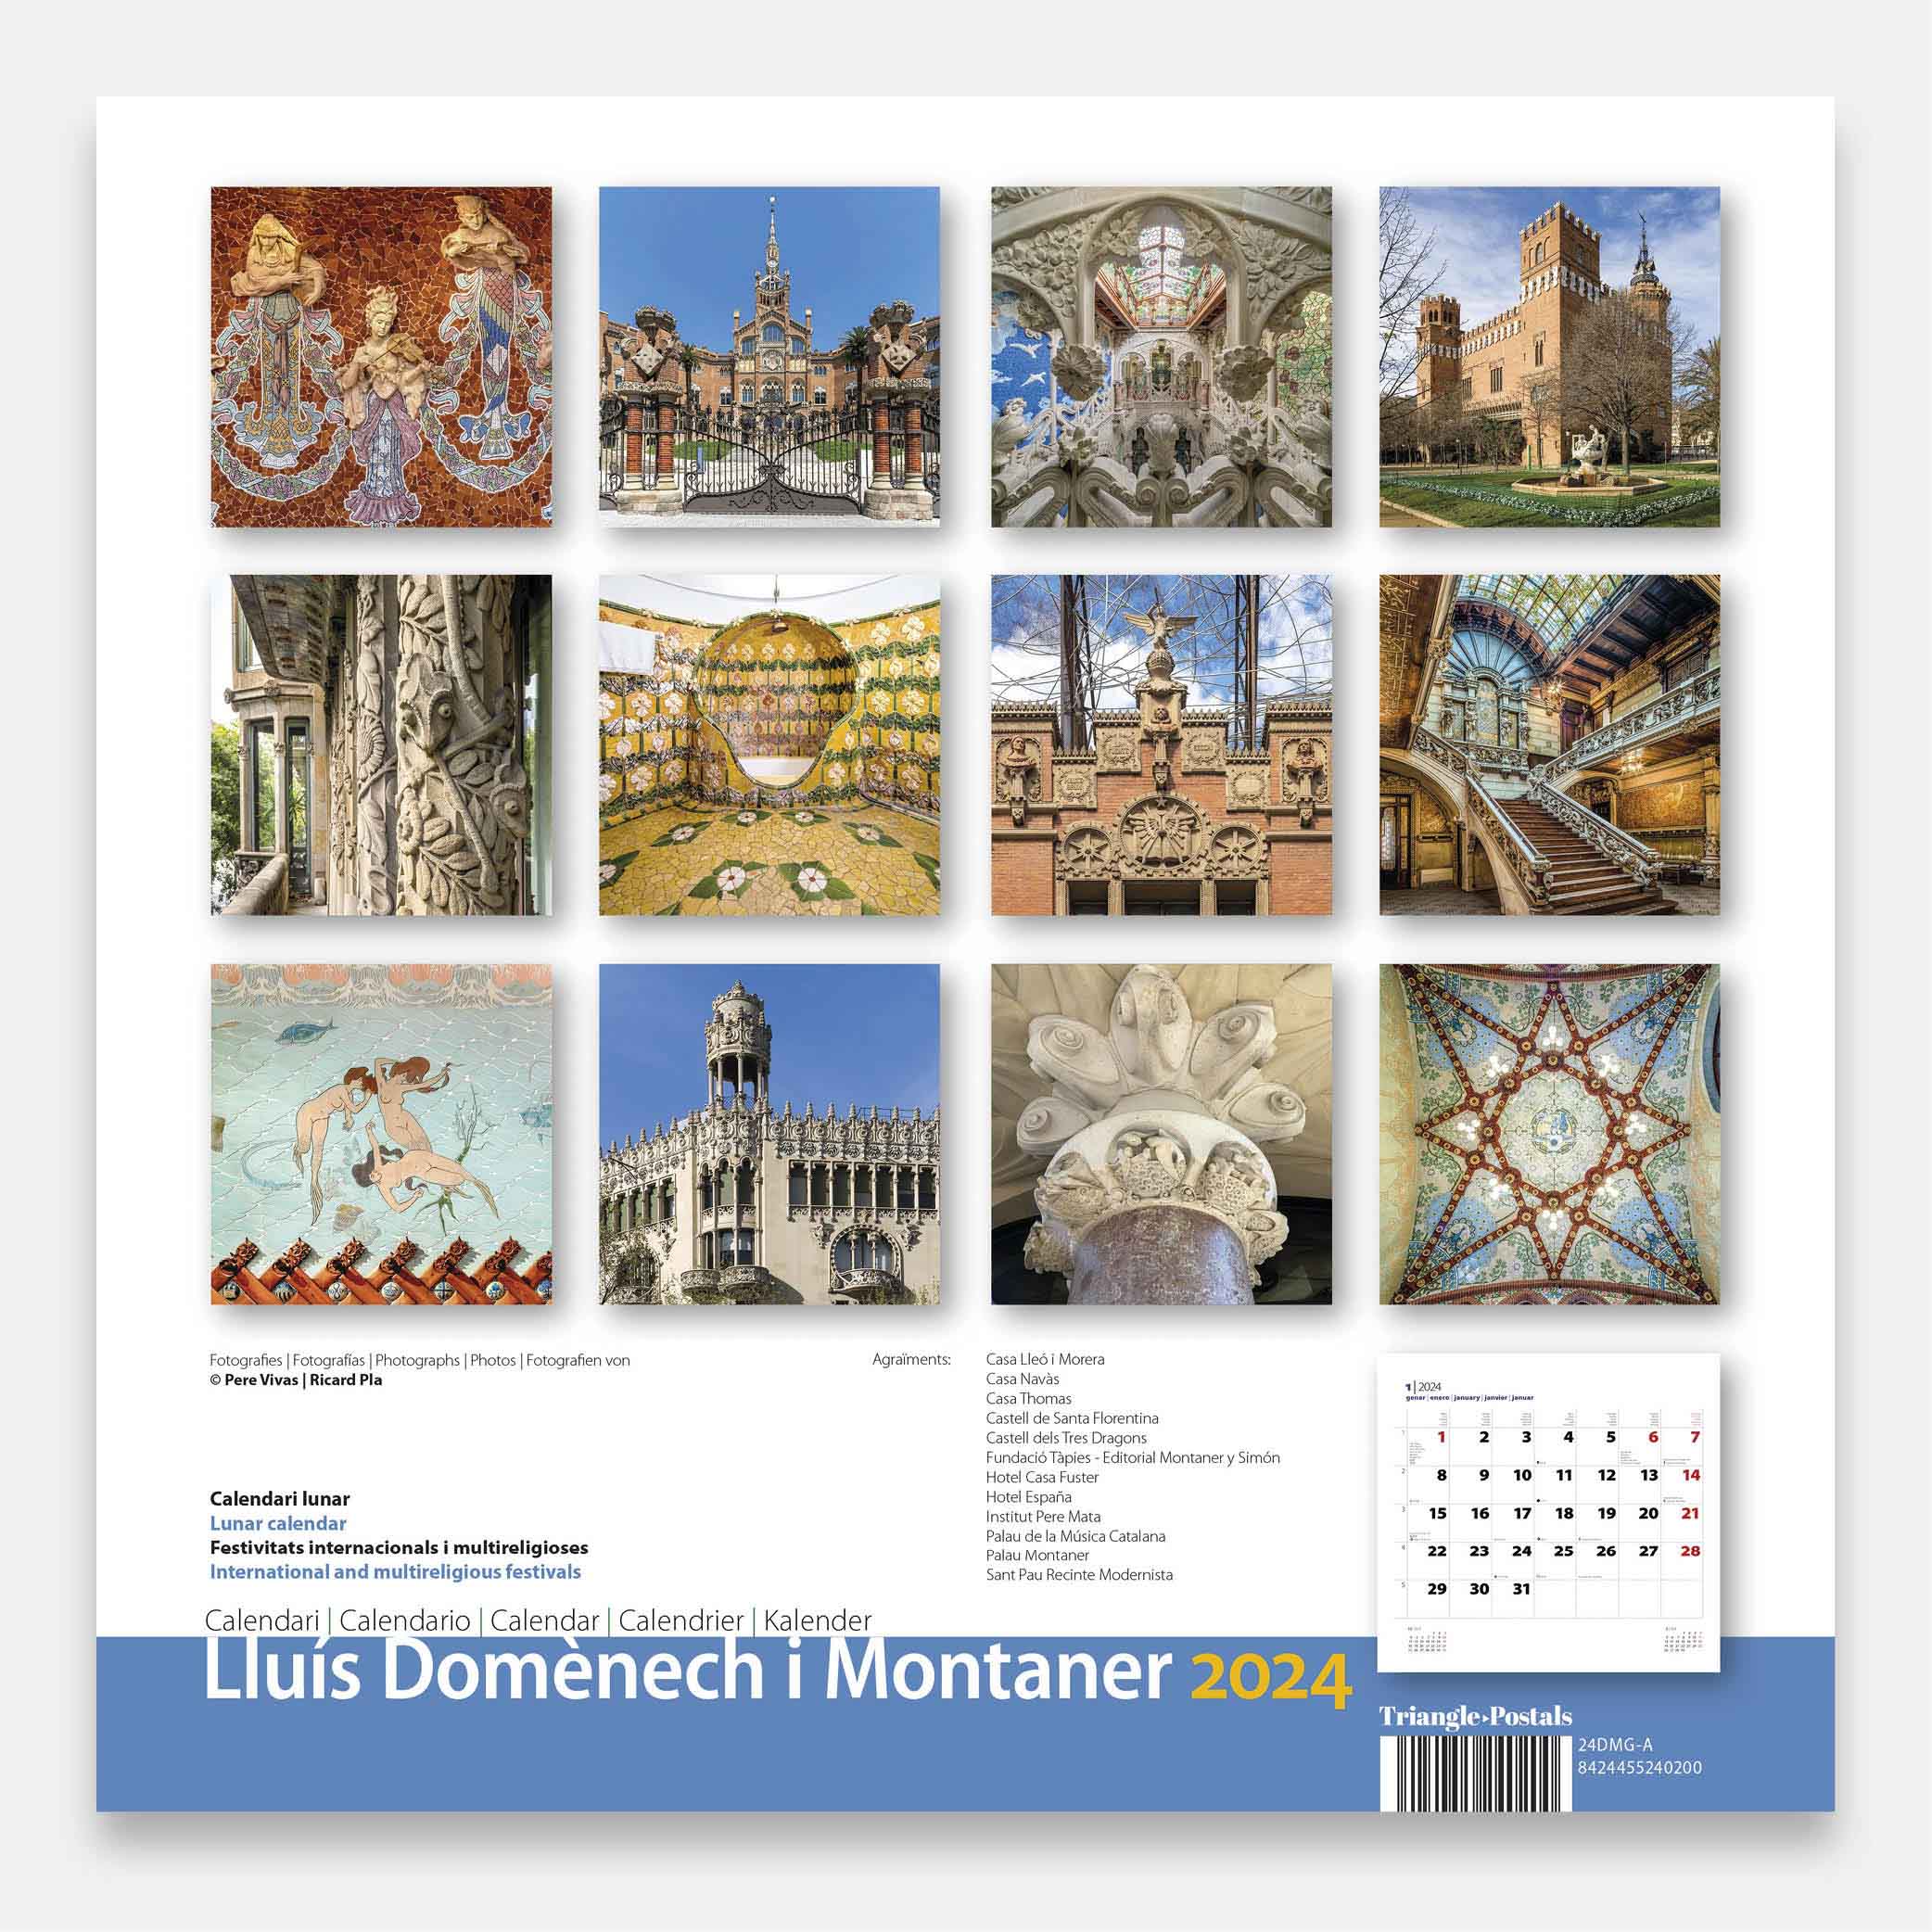 Lluís Domènech i Montaner (A) 24dmg1a2 calendario pared 2024 lluis domenech